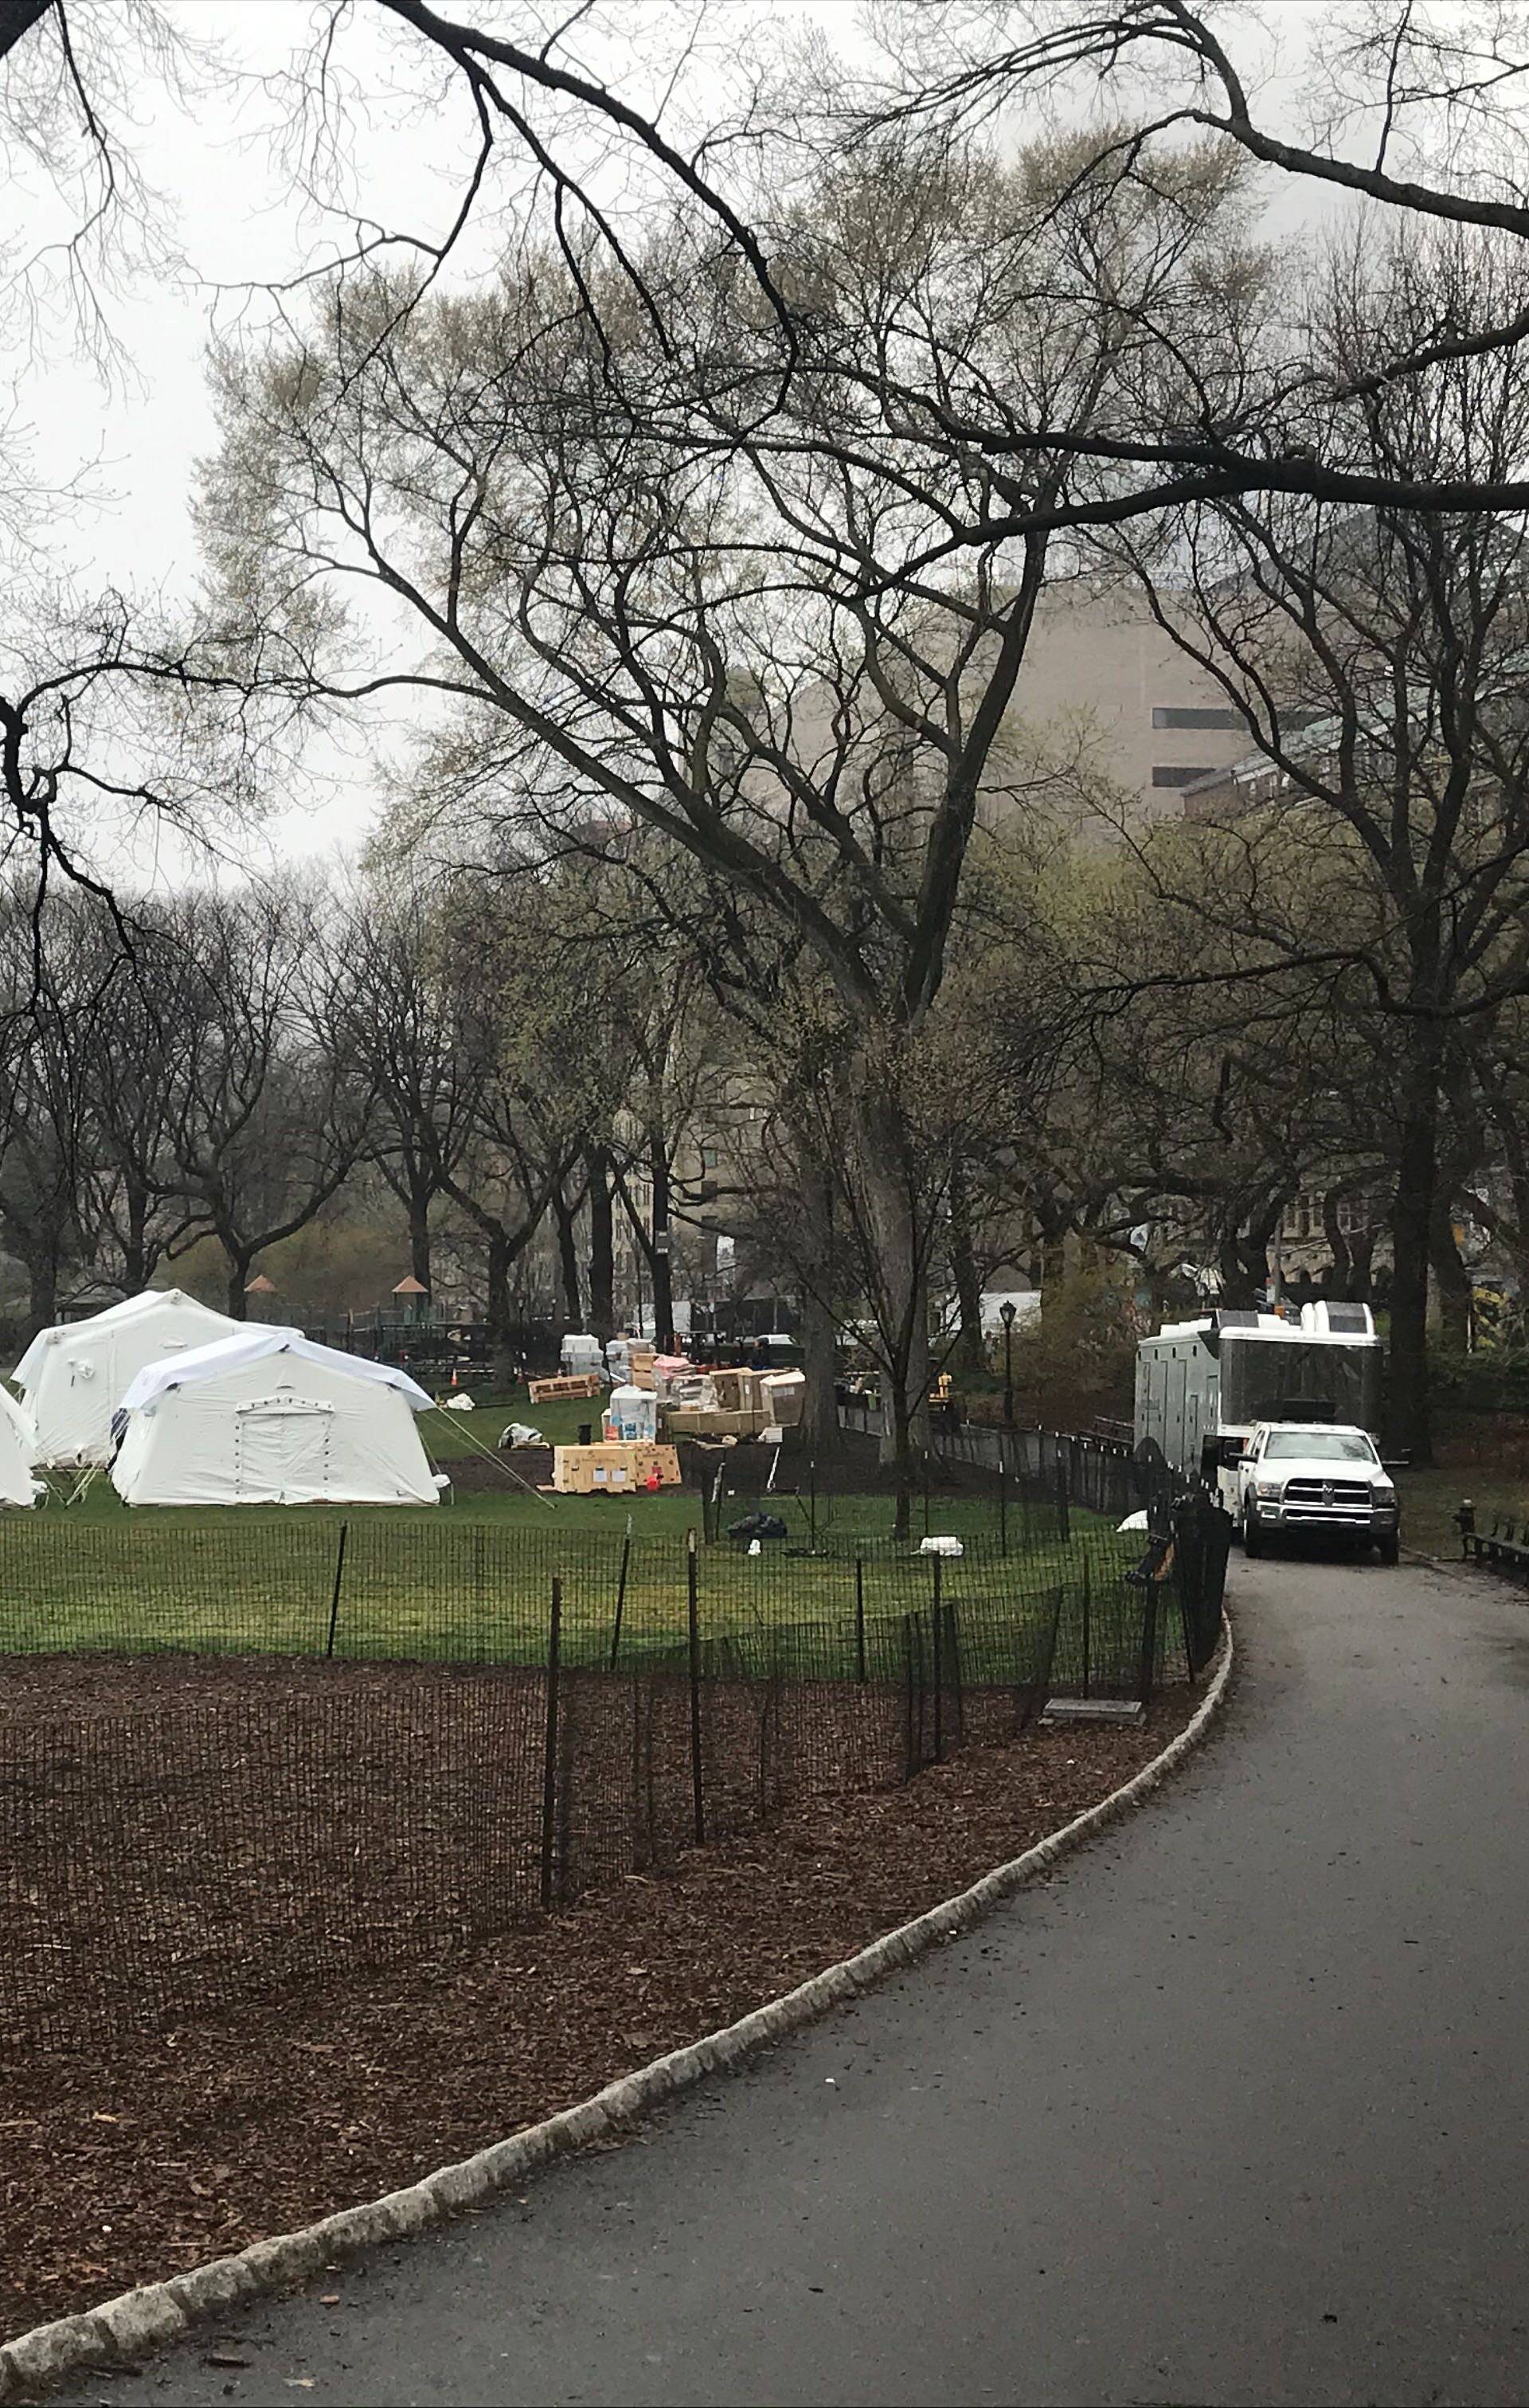 Stanje u NYC-u je loše: Usred Central Parka podiže se bolnica